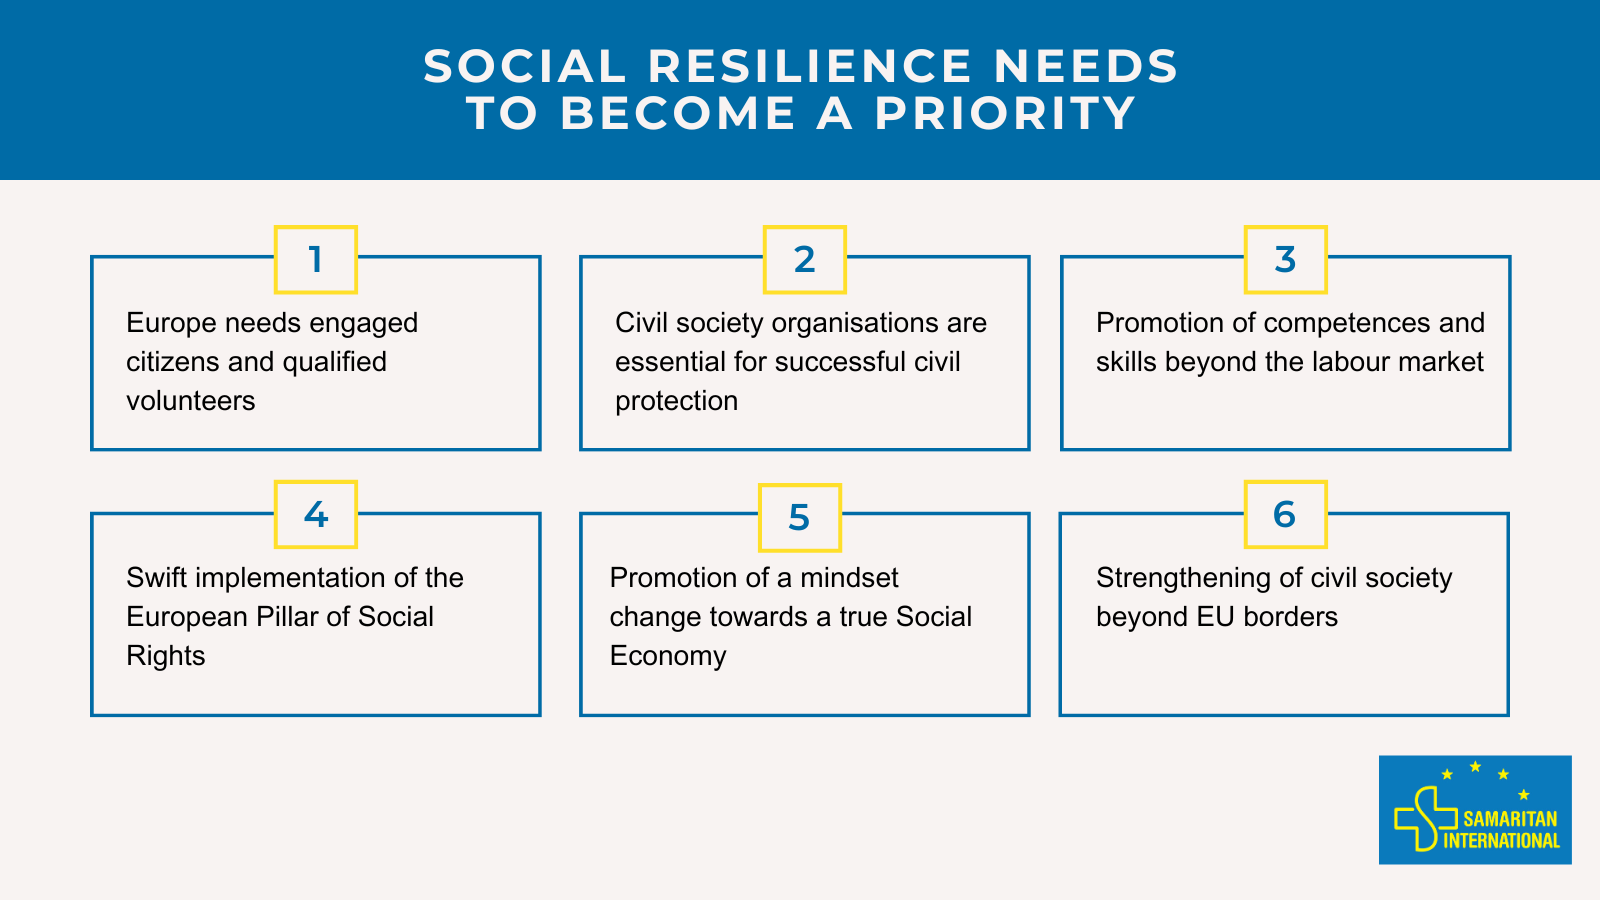 Soziale Resilienz muss zur Priorität werden